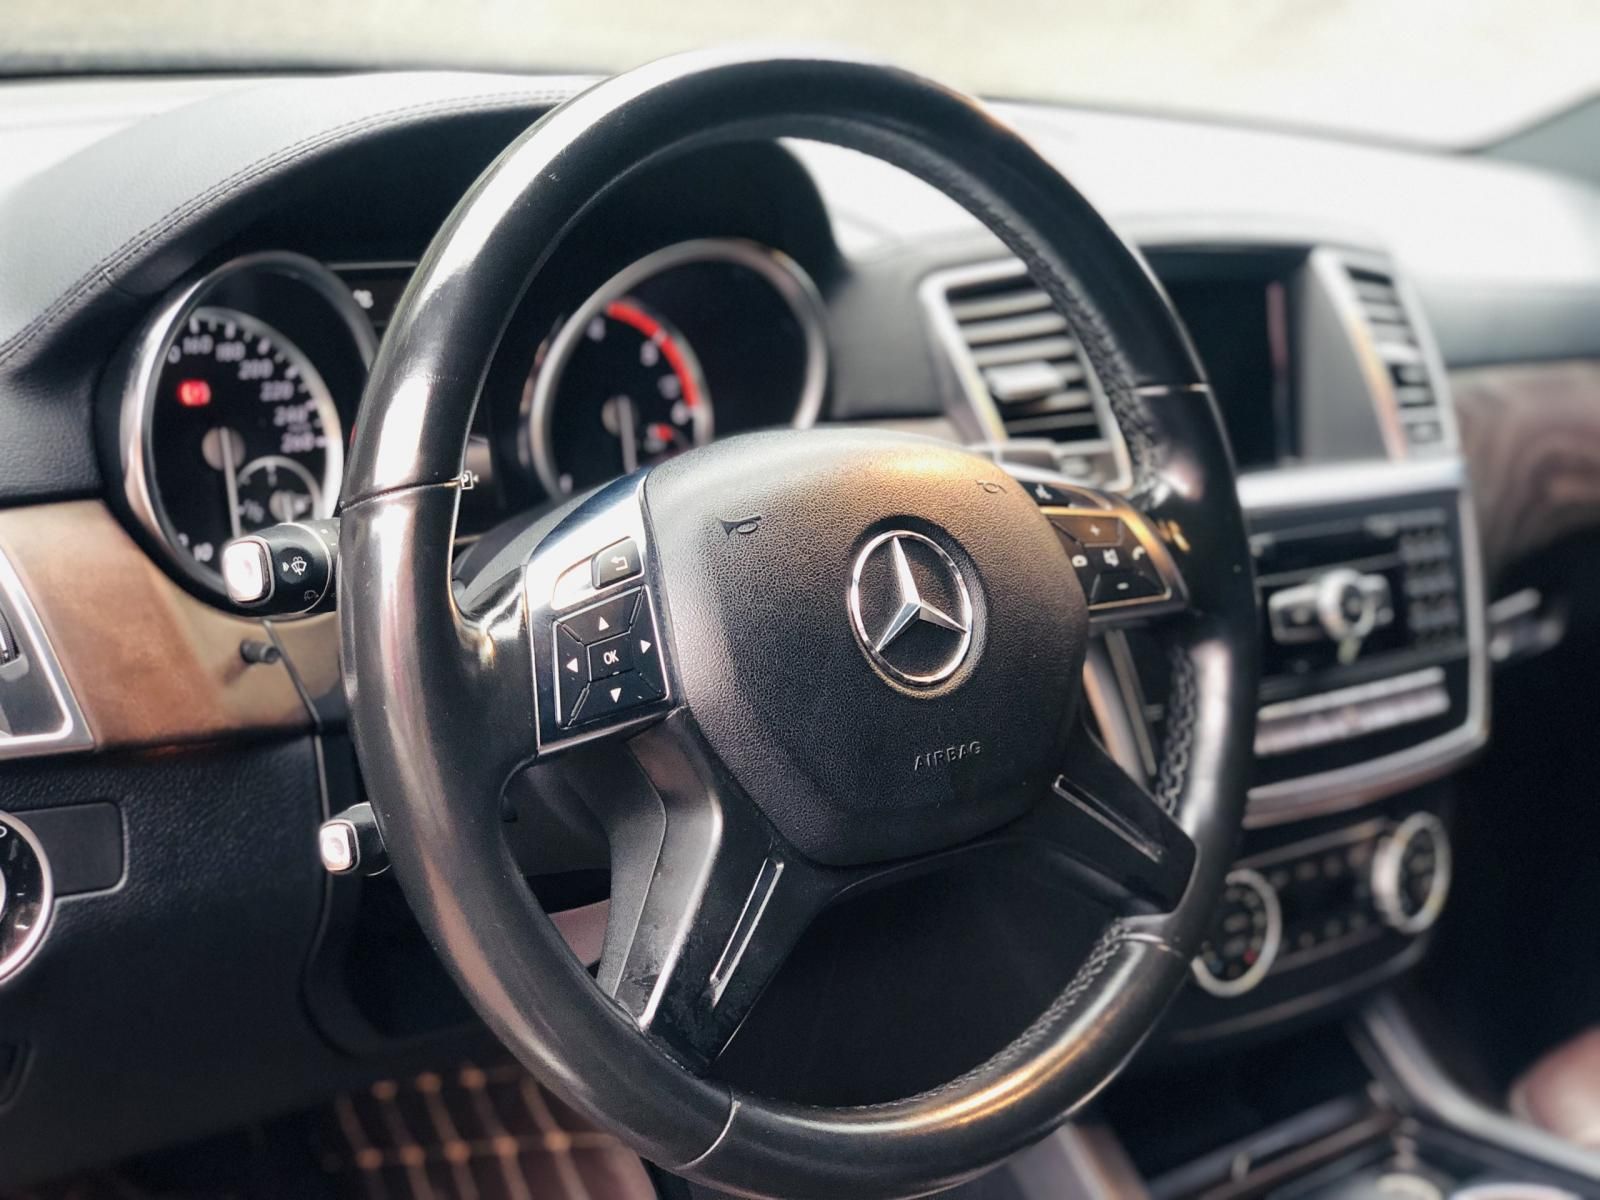 Mercedes-Benz GL 350 2015 - 1 tỷ 930 triệu